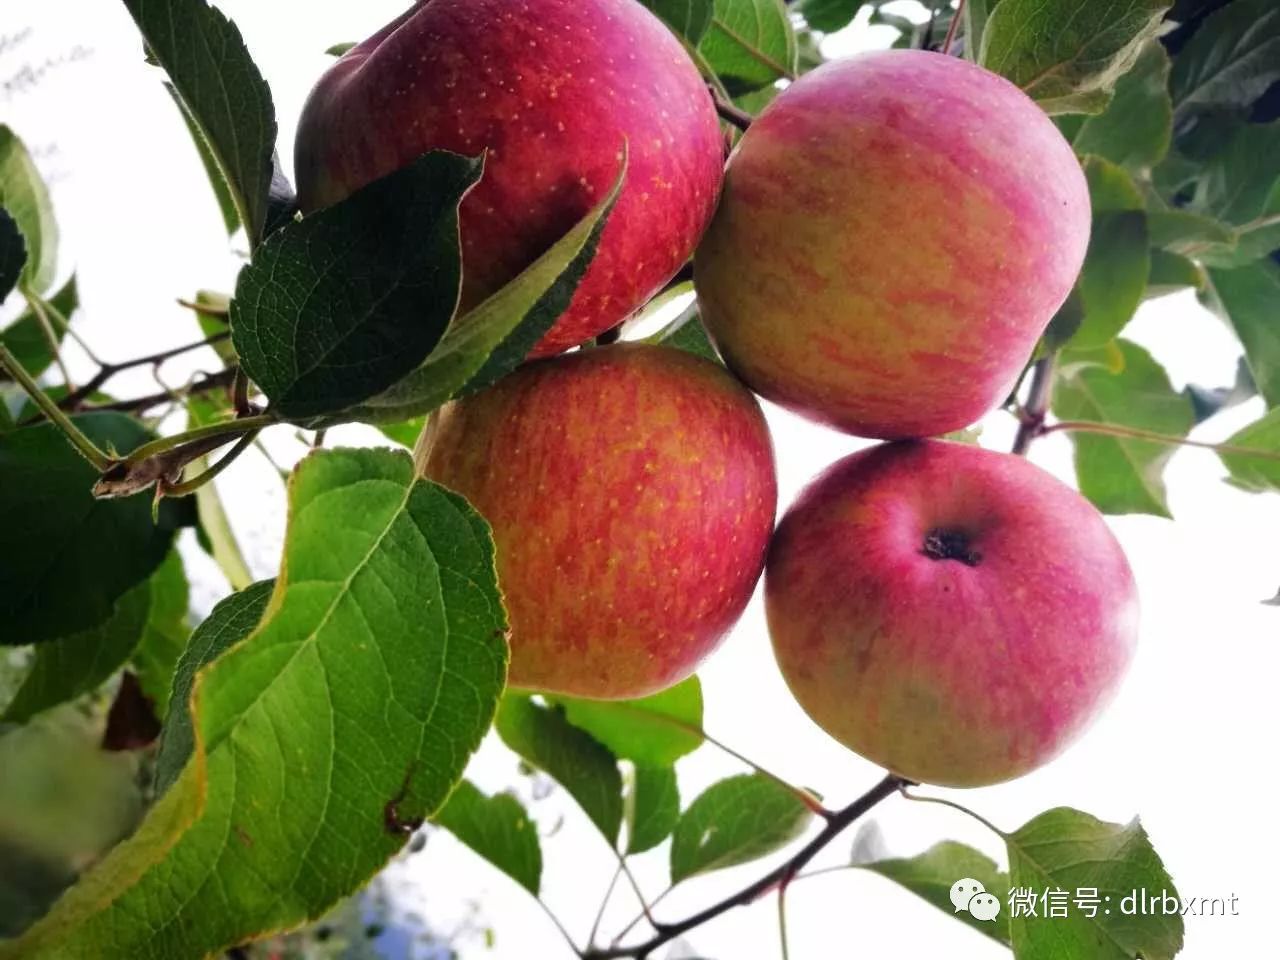 漾濞李家庄的苹果熟啦!香甜苹果挂满枝